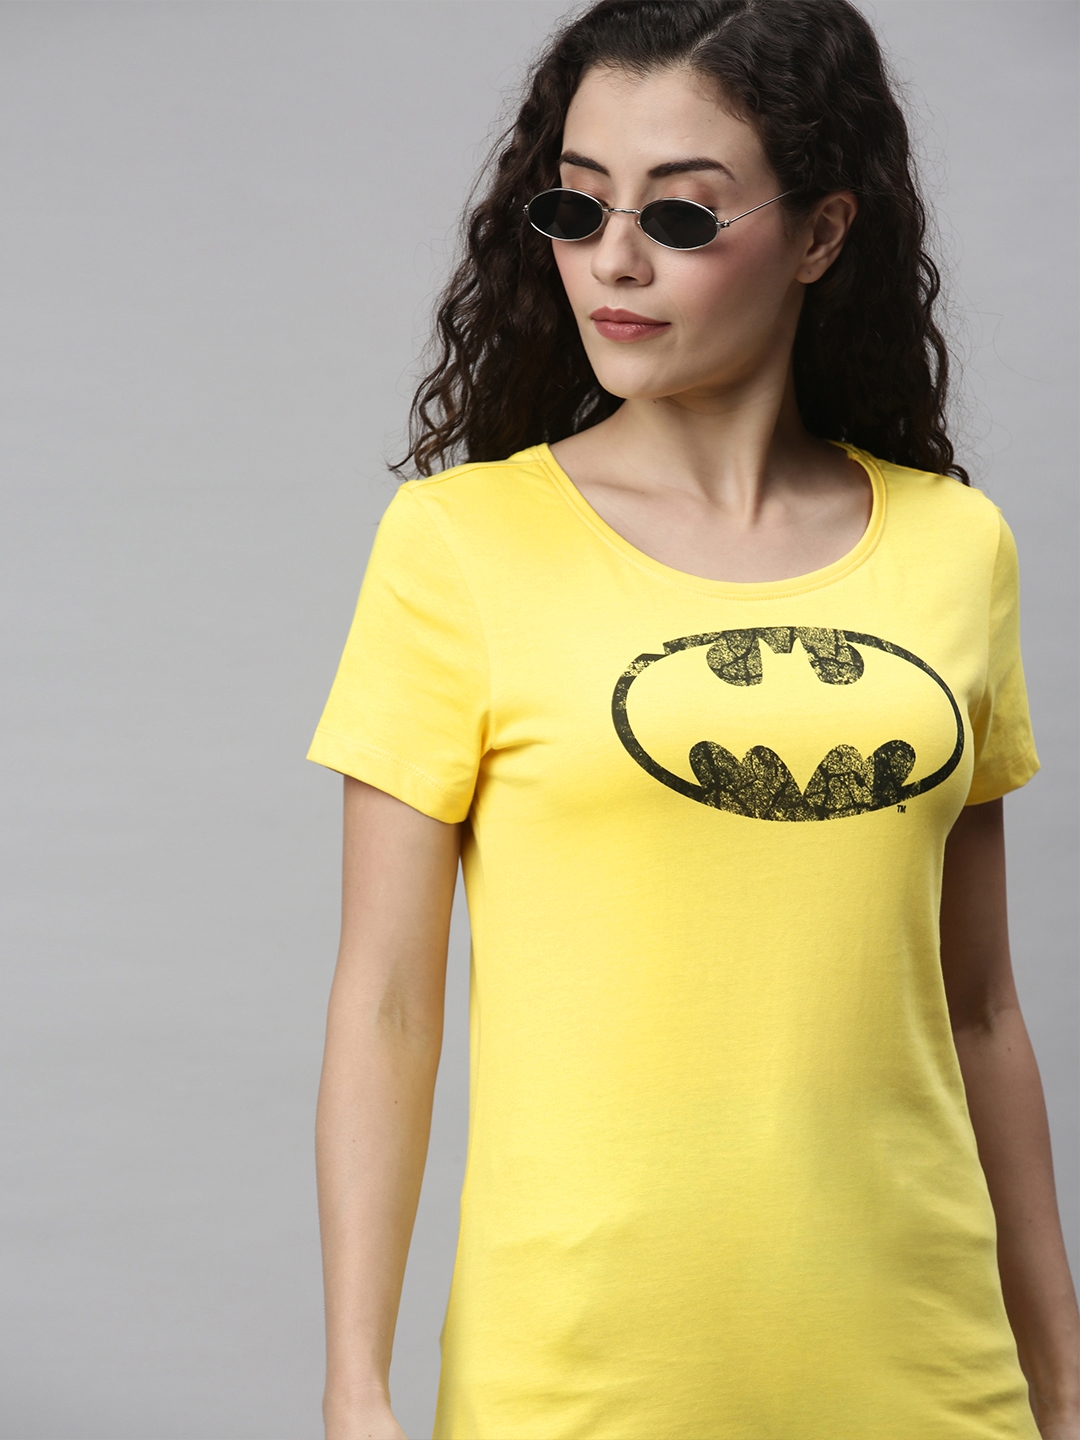 HUETRAP | Batman Yellow and Black Printed Rogue Round Neck T-Shirt